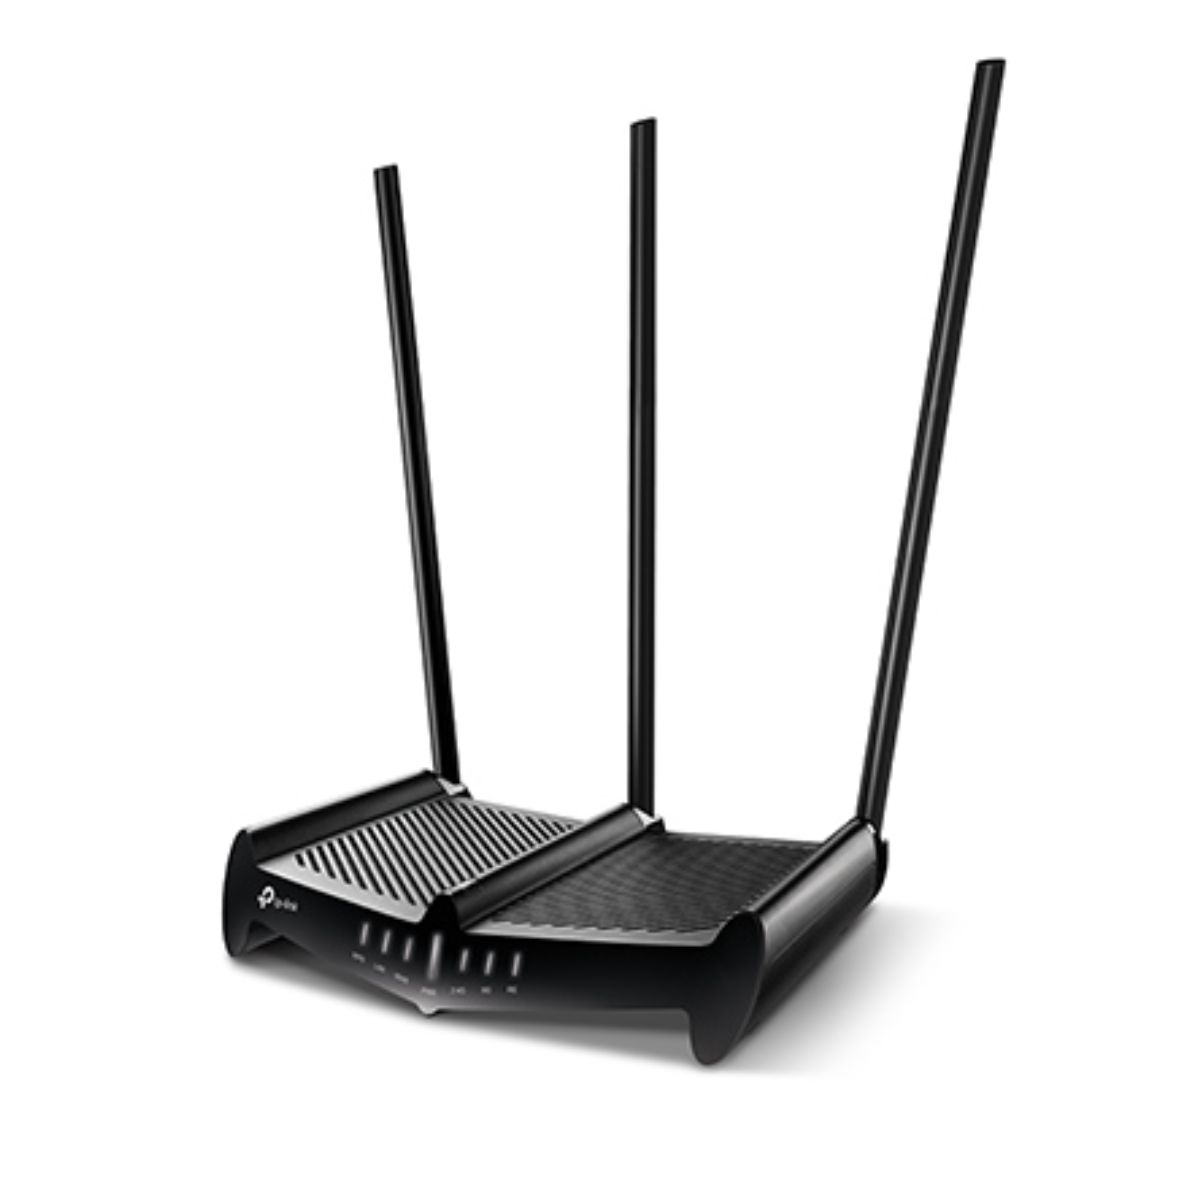 Router wifi băng tần kép TP-Link Archer C58HP tốc độ 450 Mbps trên 2.4GHz, 867 Mbps trên 5 GHz